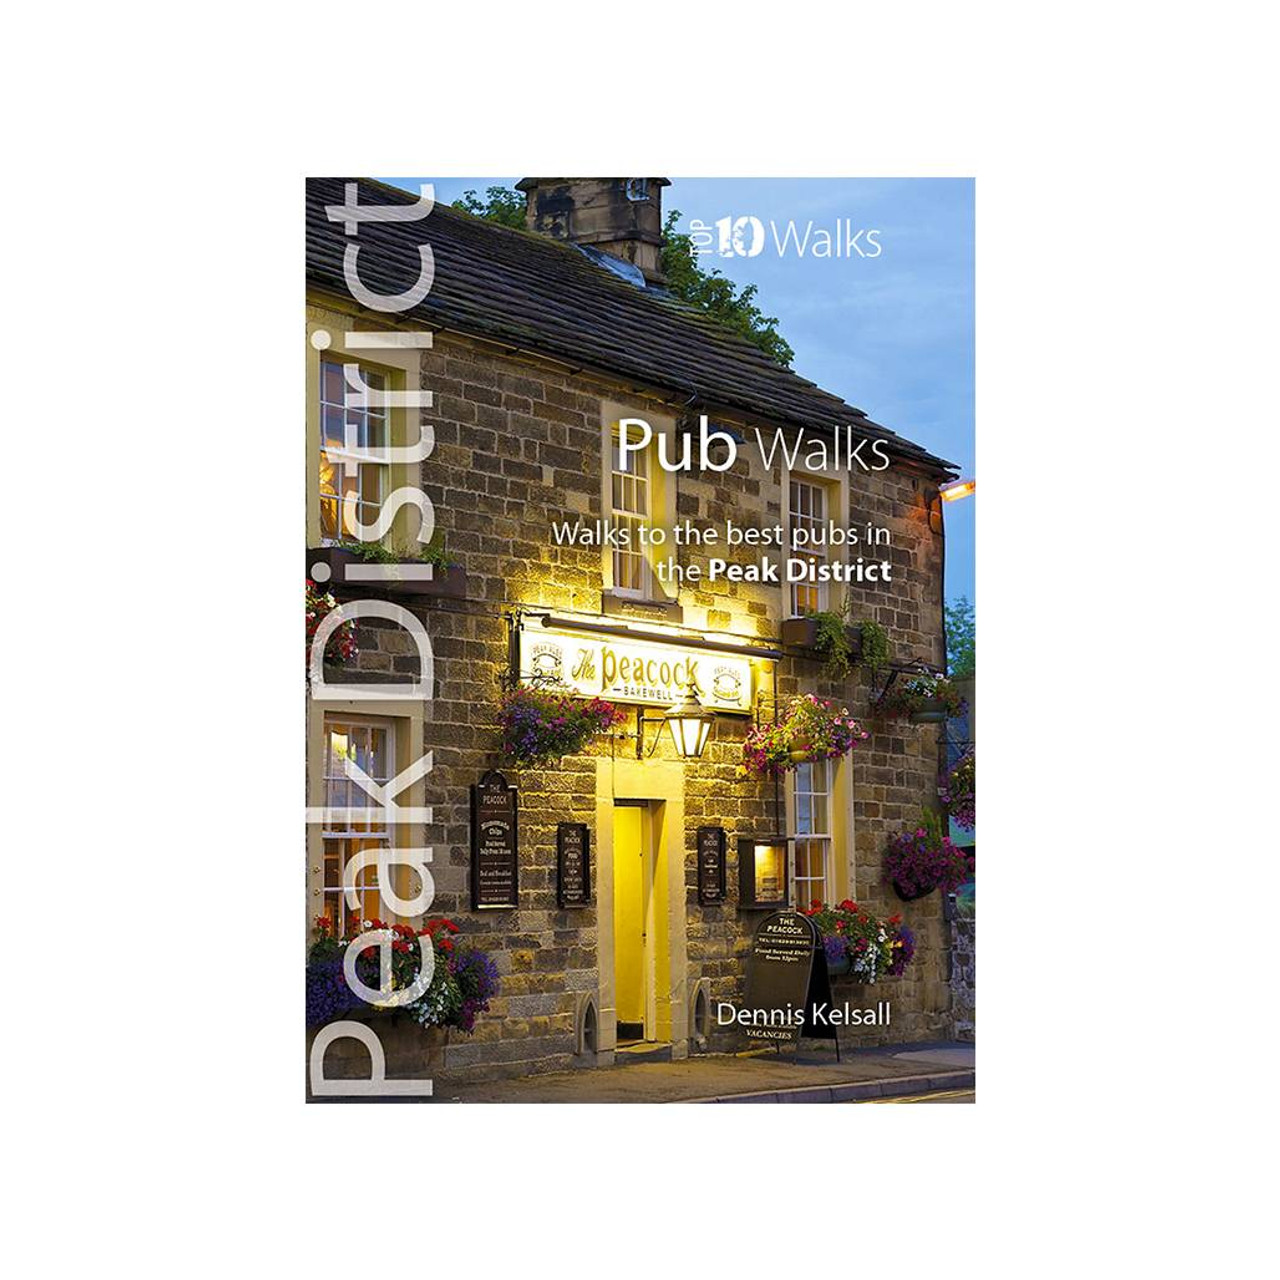 Pub Walks - Top 10 Walks: Peak District